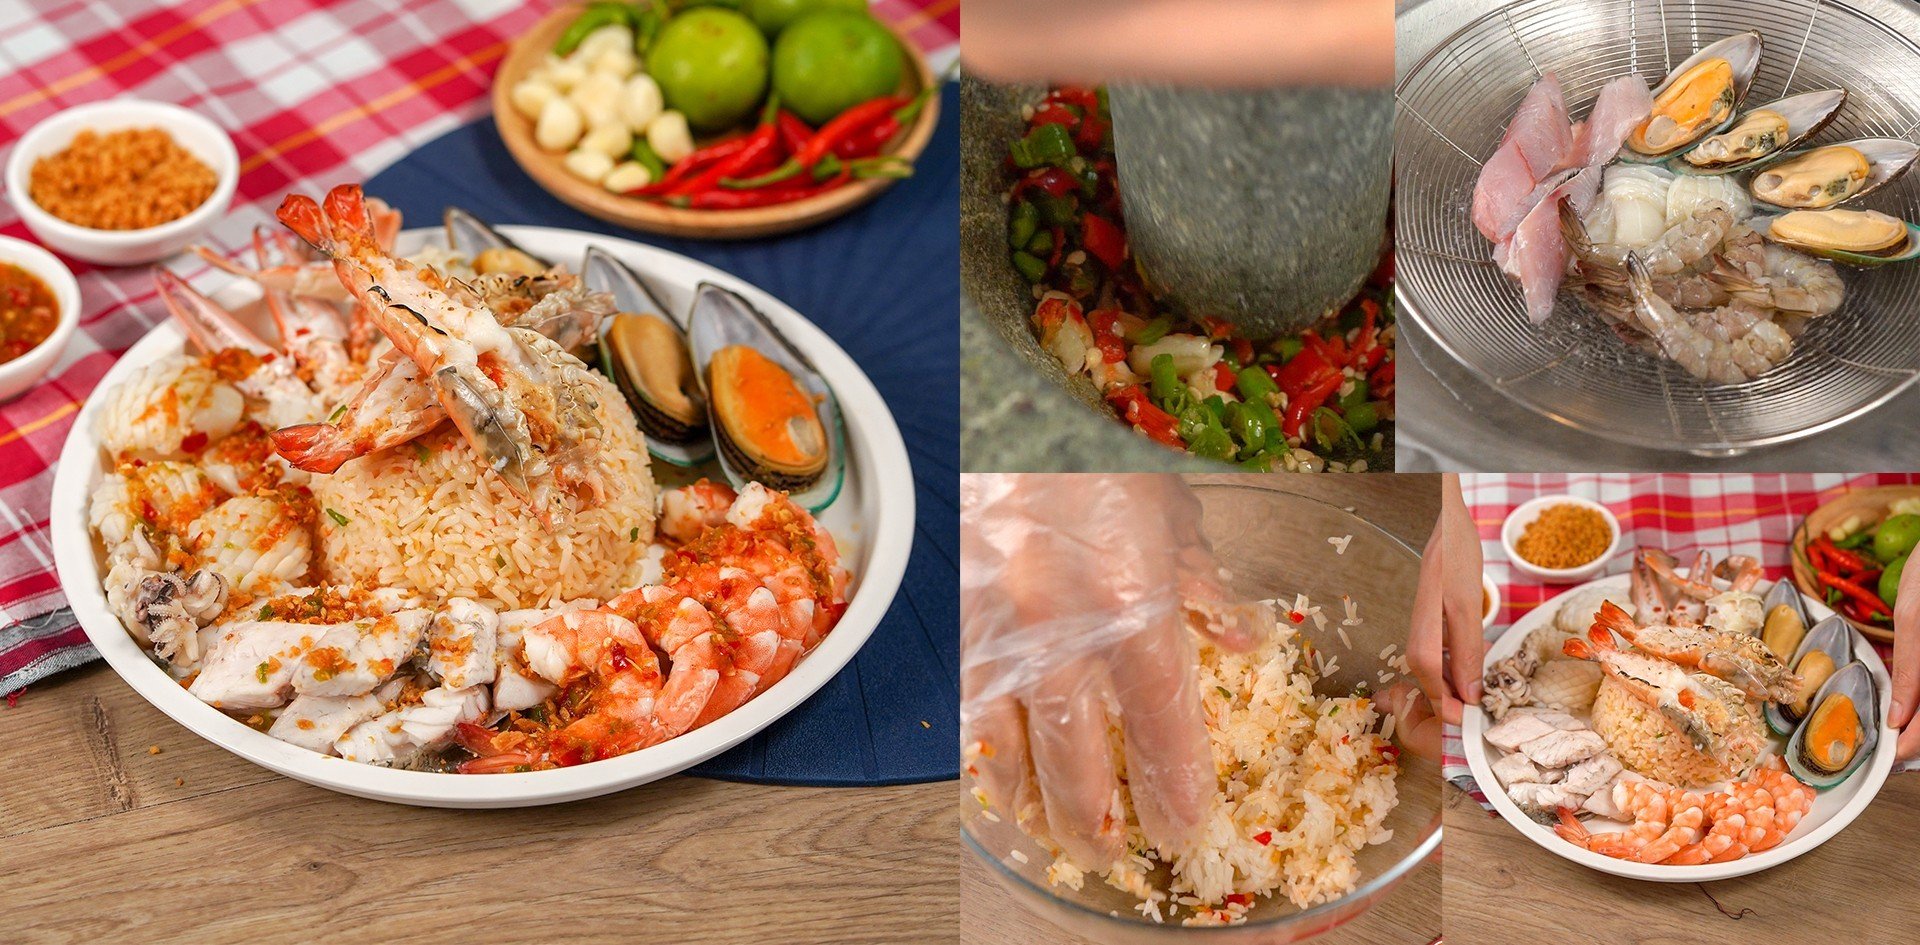 วิธีทำ “ข้าวคลุกพริกเกลือ” เมนูอาหารจานเดียว ข้าวแซ่บ เครื่องทะเลแน่น